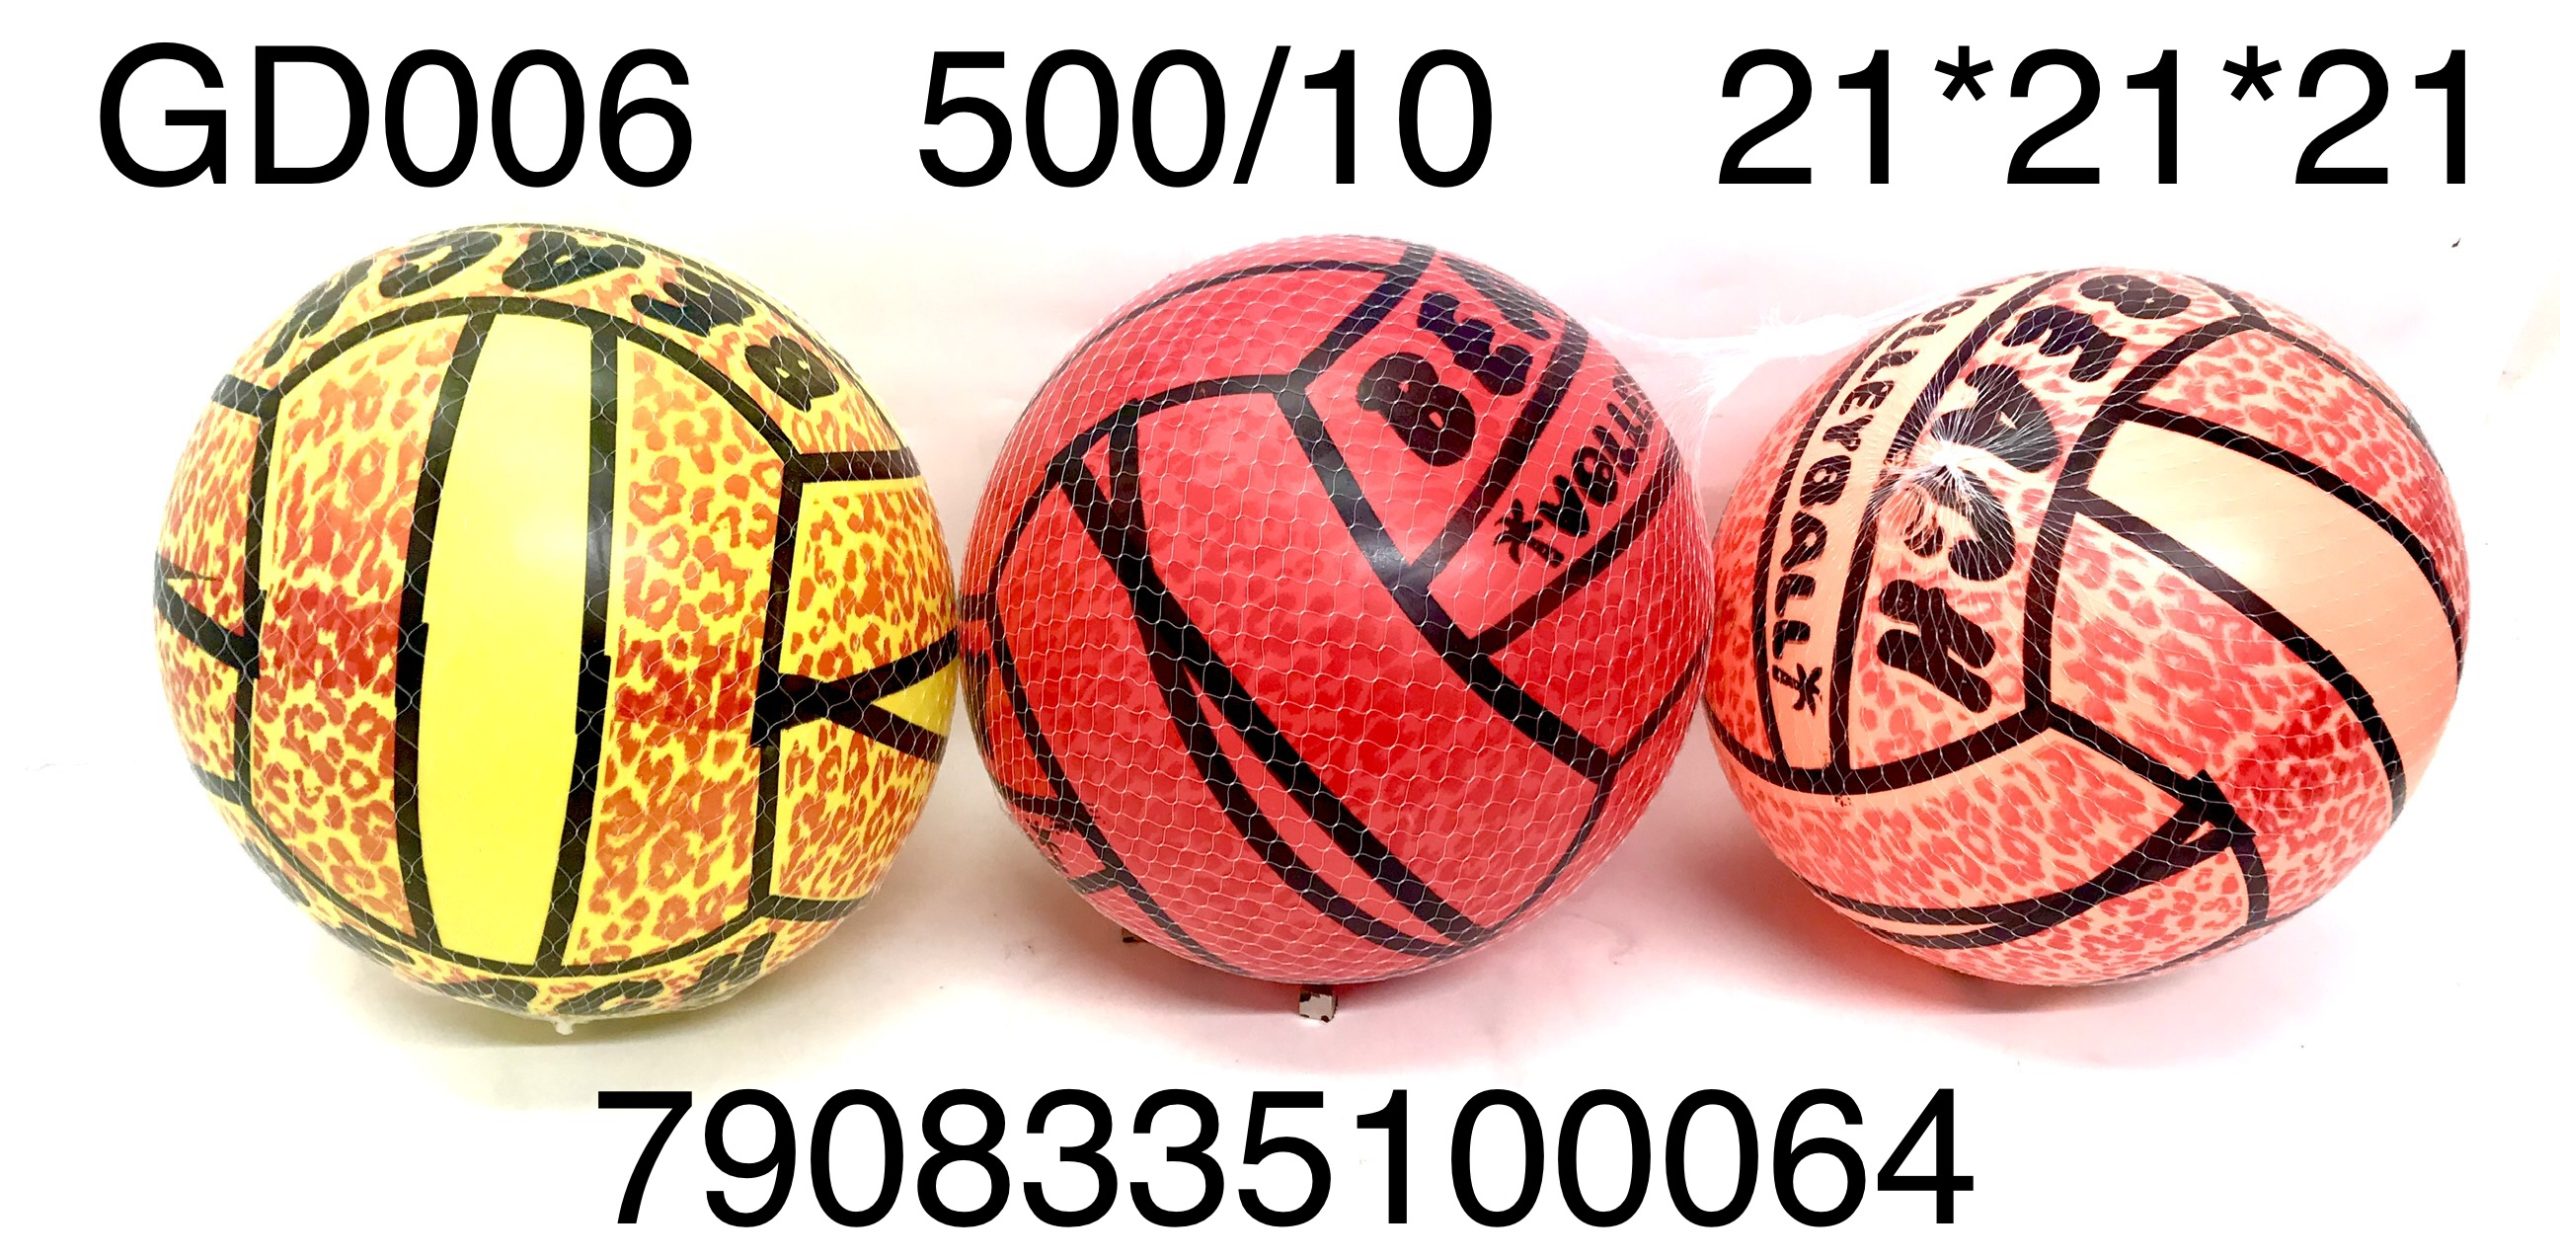 Мяч GD006 ПВХ д=20см - Самара 